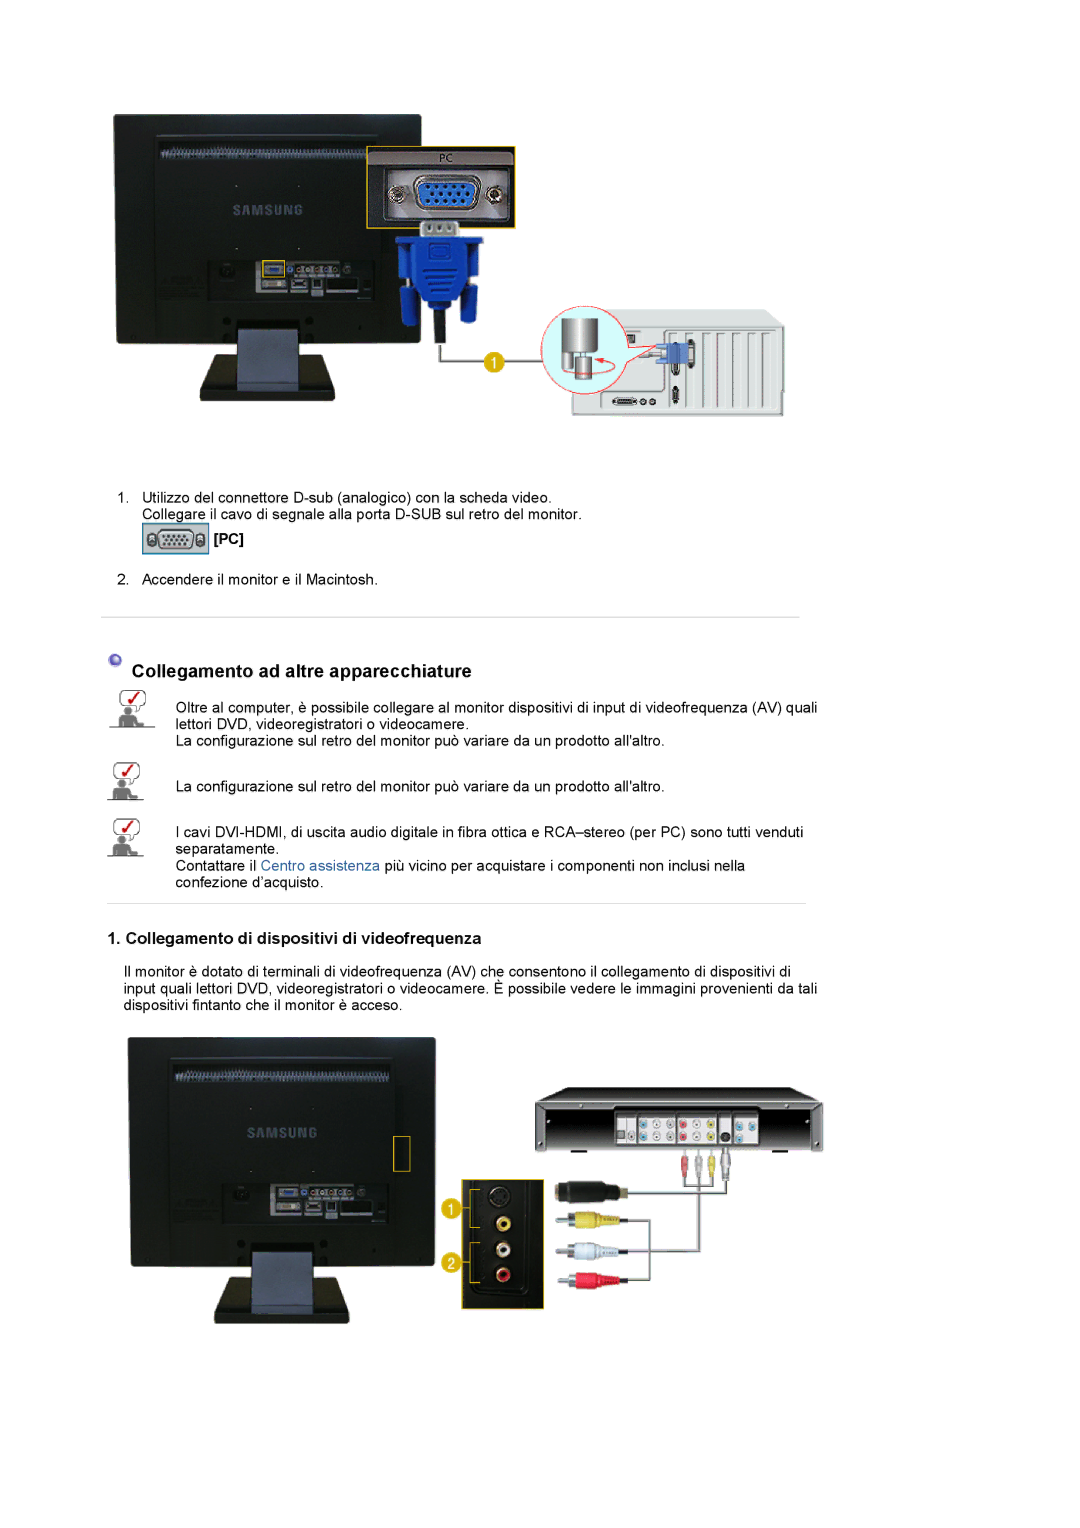 Samsung LS22CRDSF/EDC, LS22CRDSB/EDC Collegamento ad altre apparecchiature, Collegamento di dispositivi di videofrequenza 